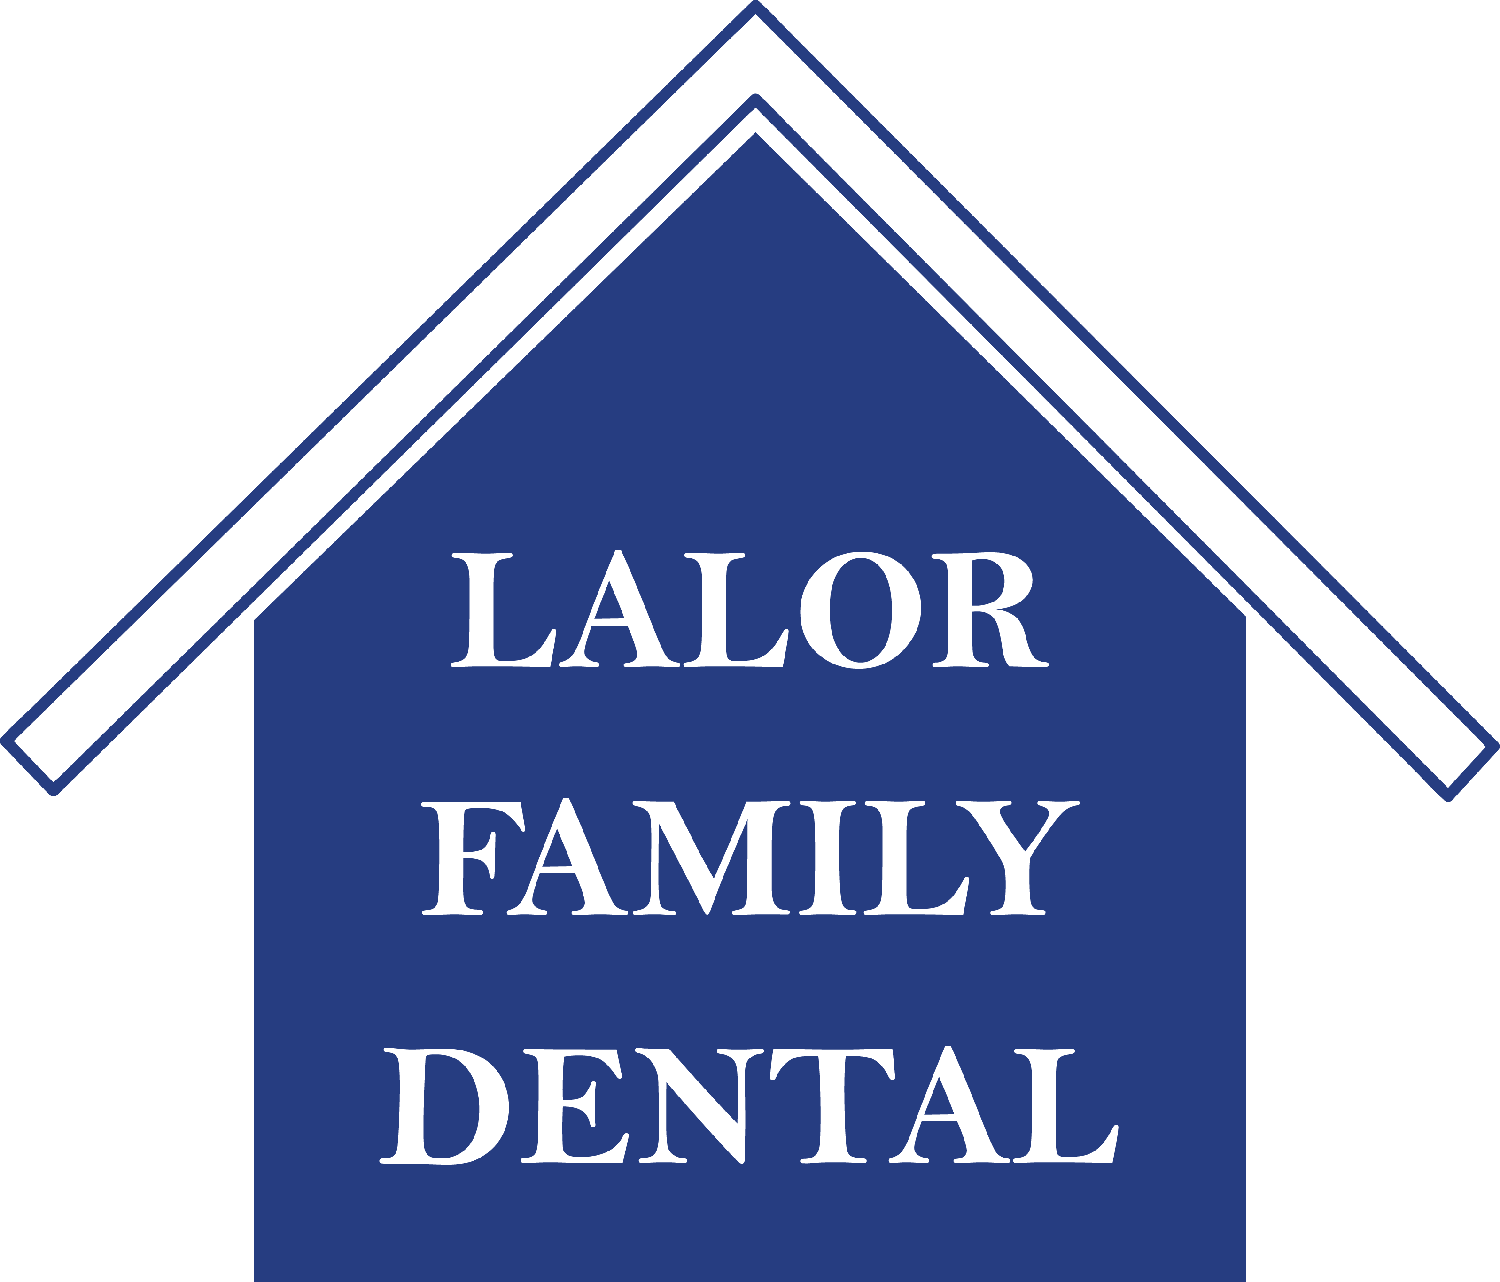 Lalor Family Dental